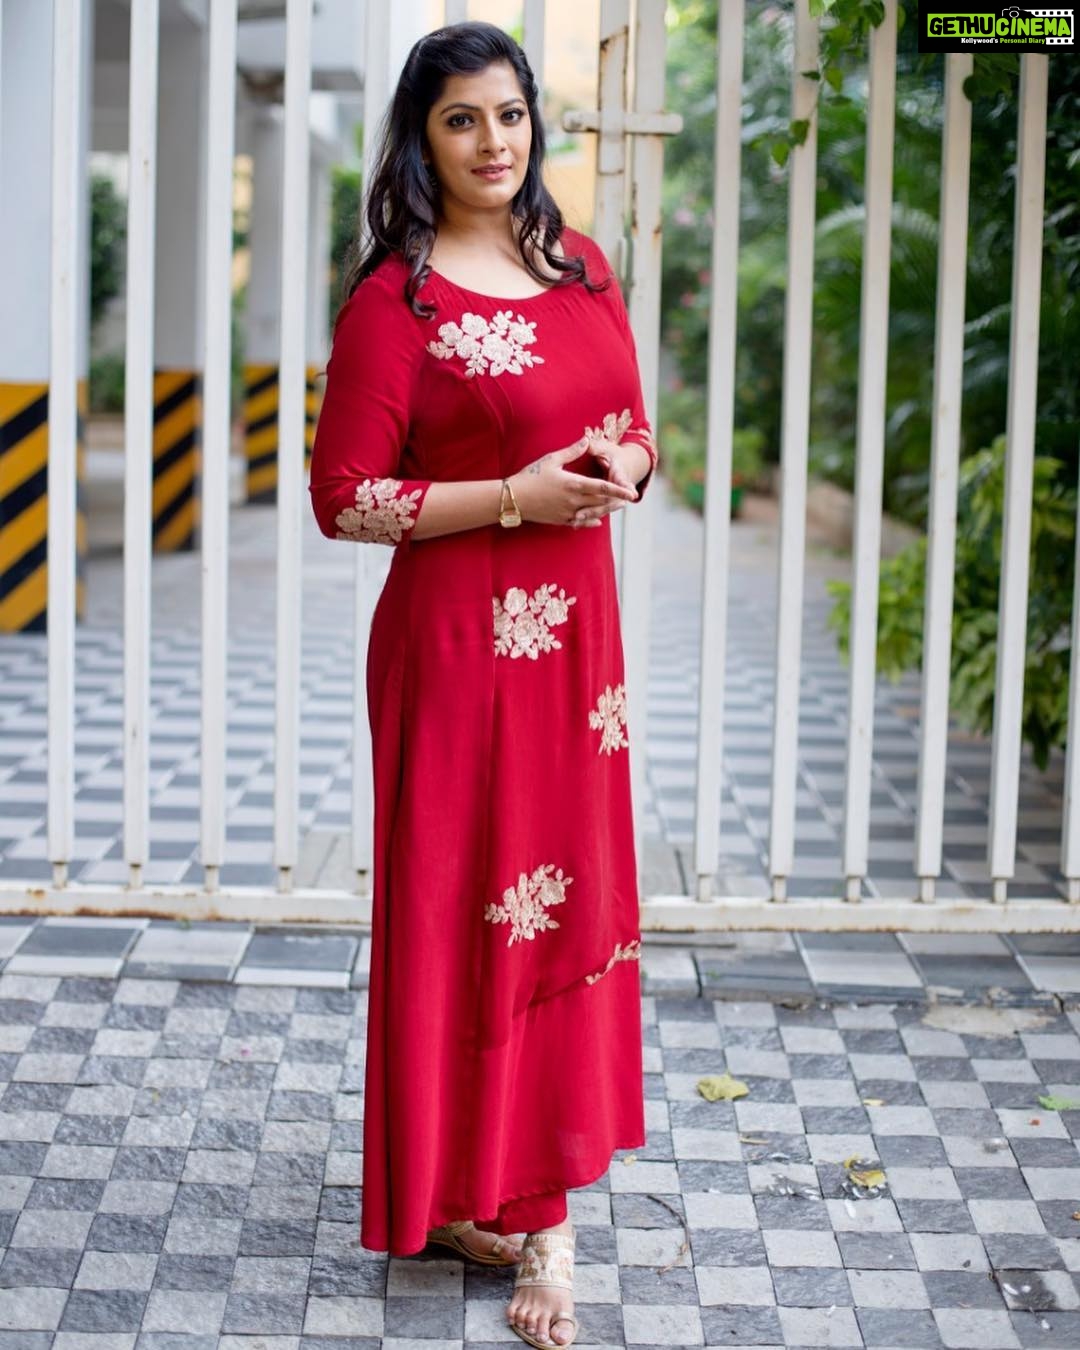 Varalaxmi Sarathkumar, red dress, large size, tamil actress - Gethu Cinema